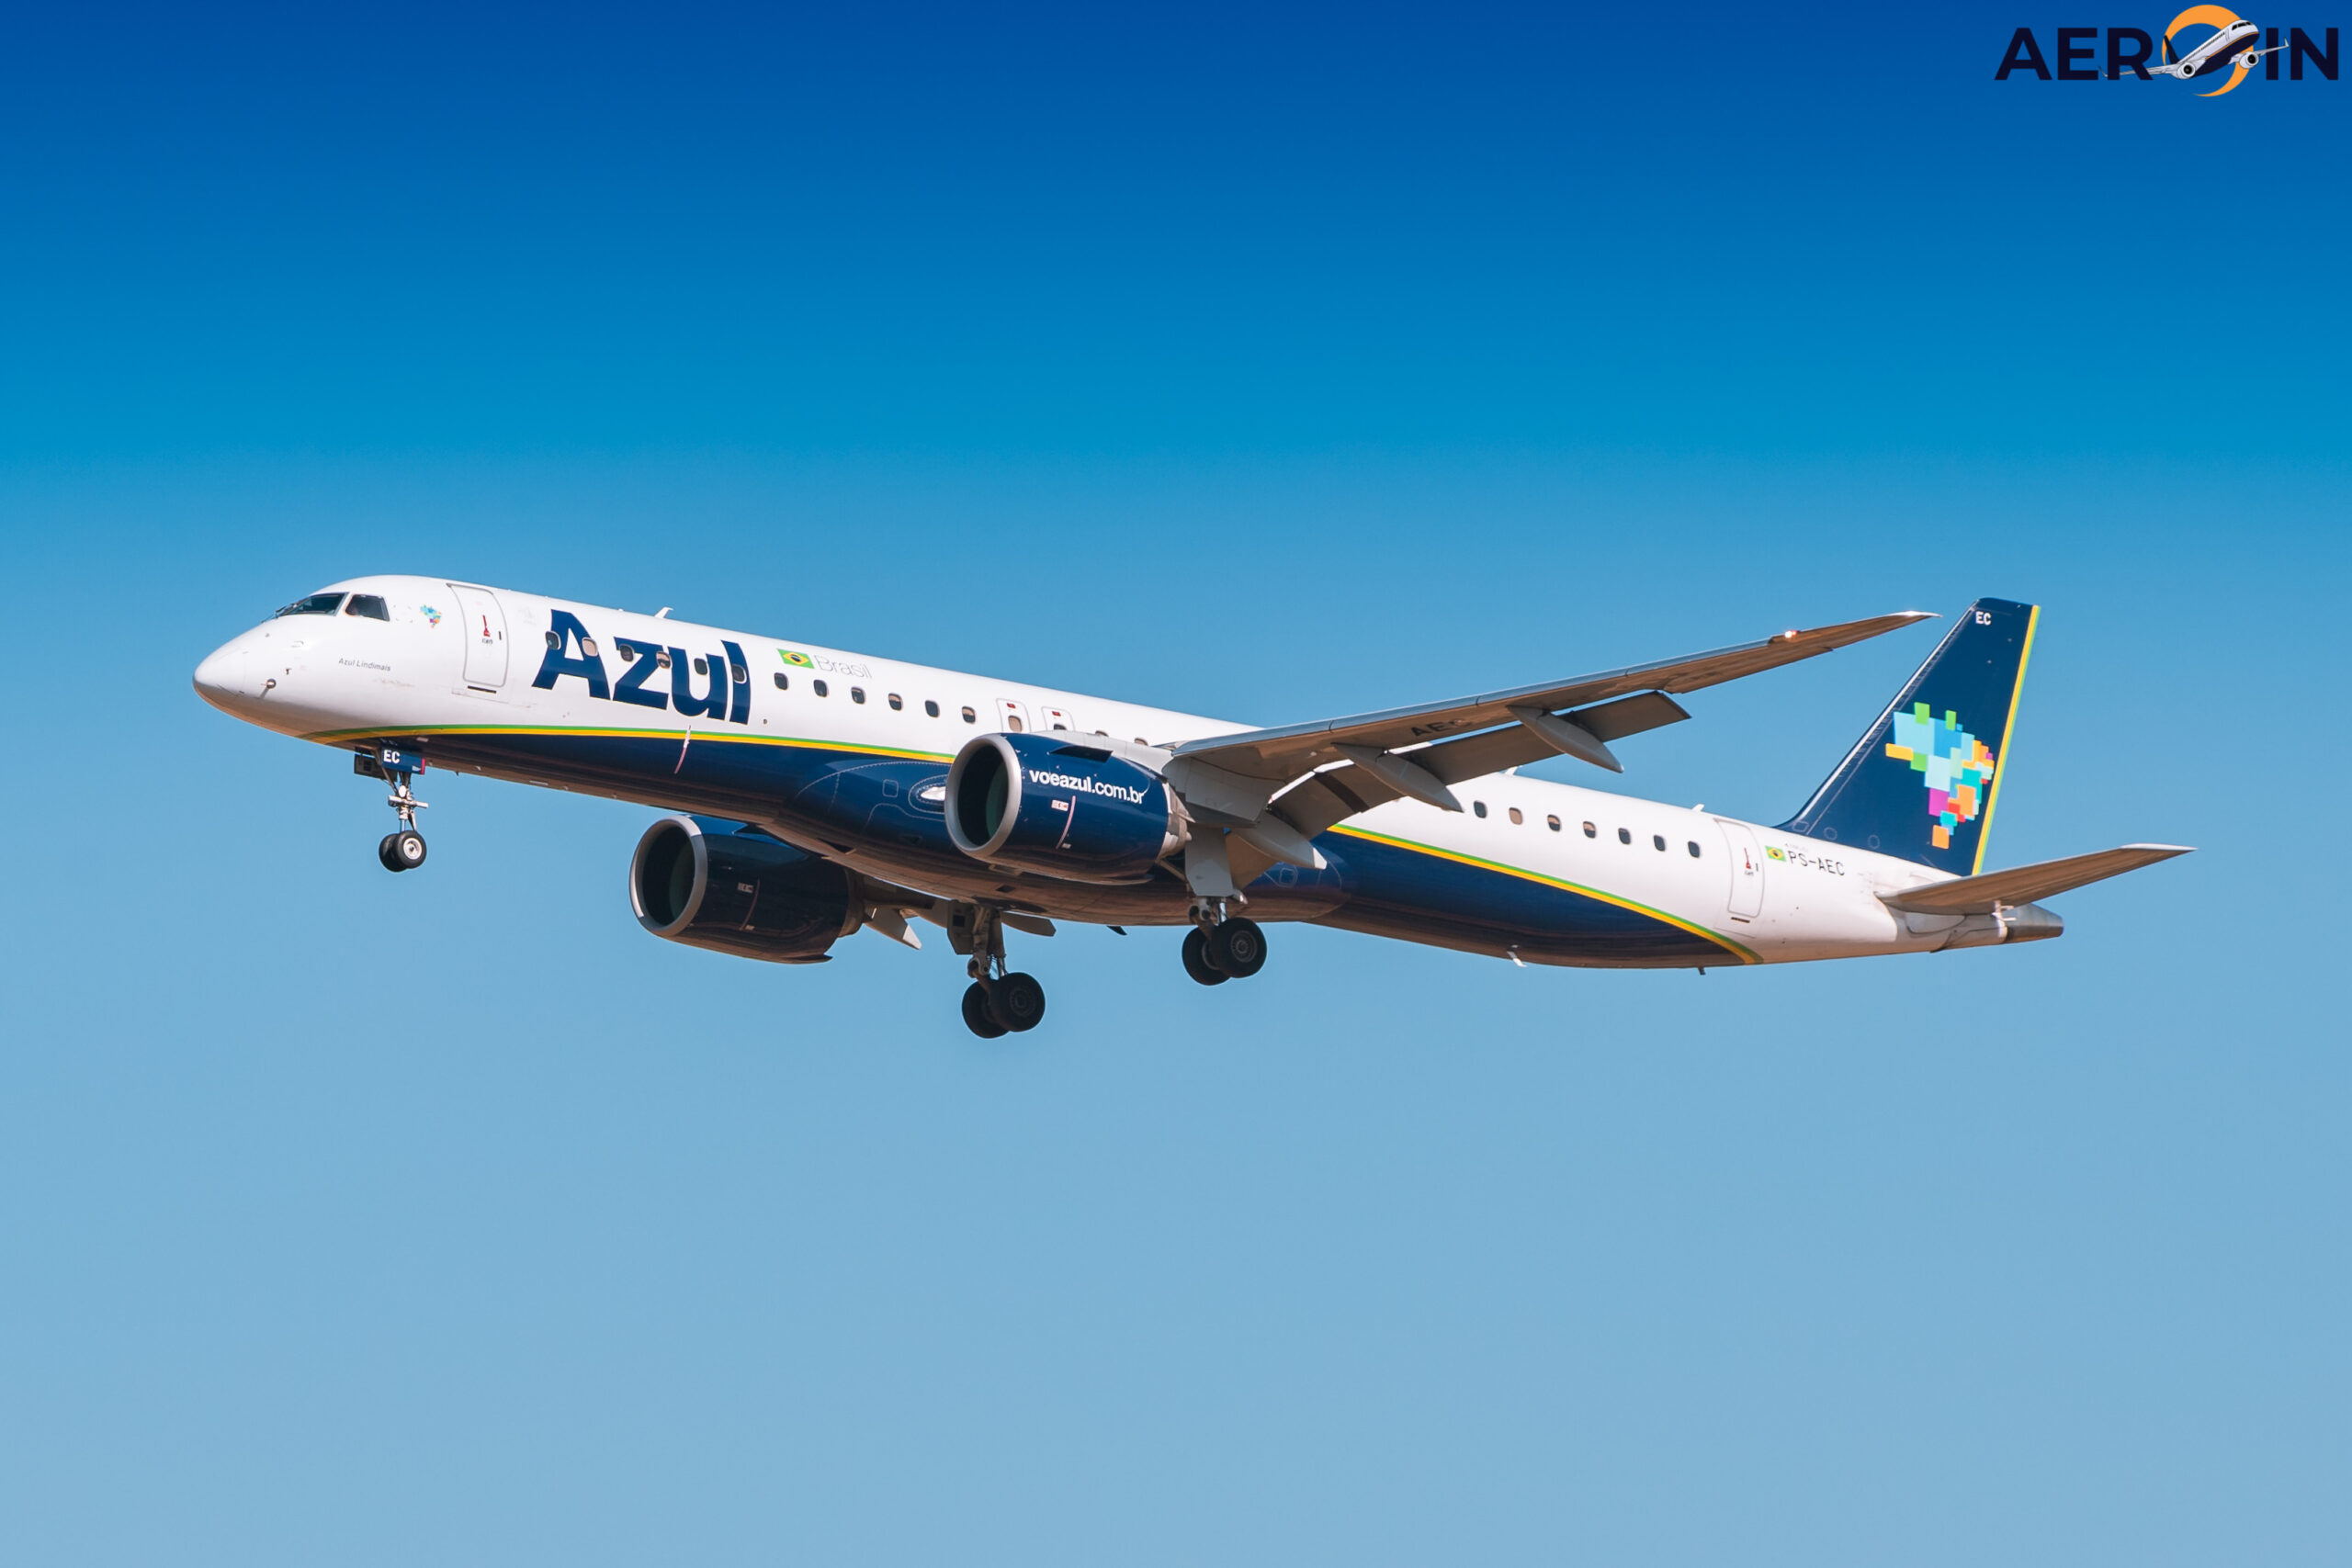 Aeronave da Azul arremete em Guarulhos por causa de avião da FAB